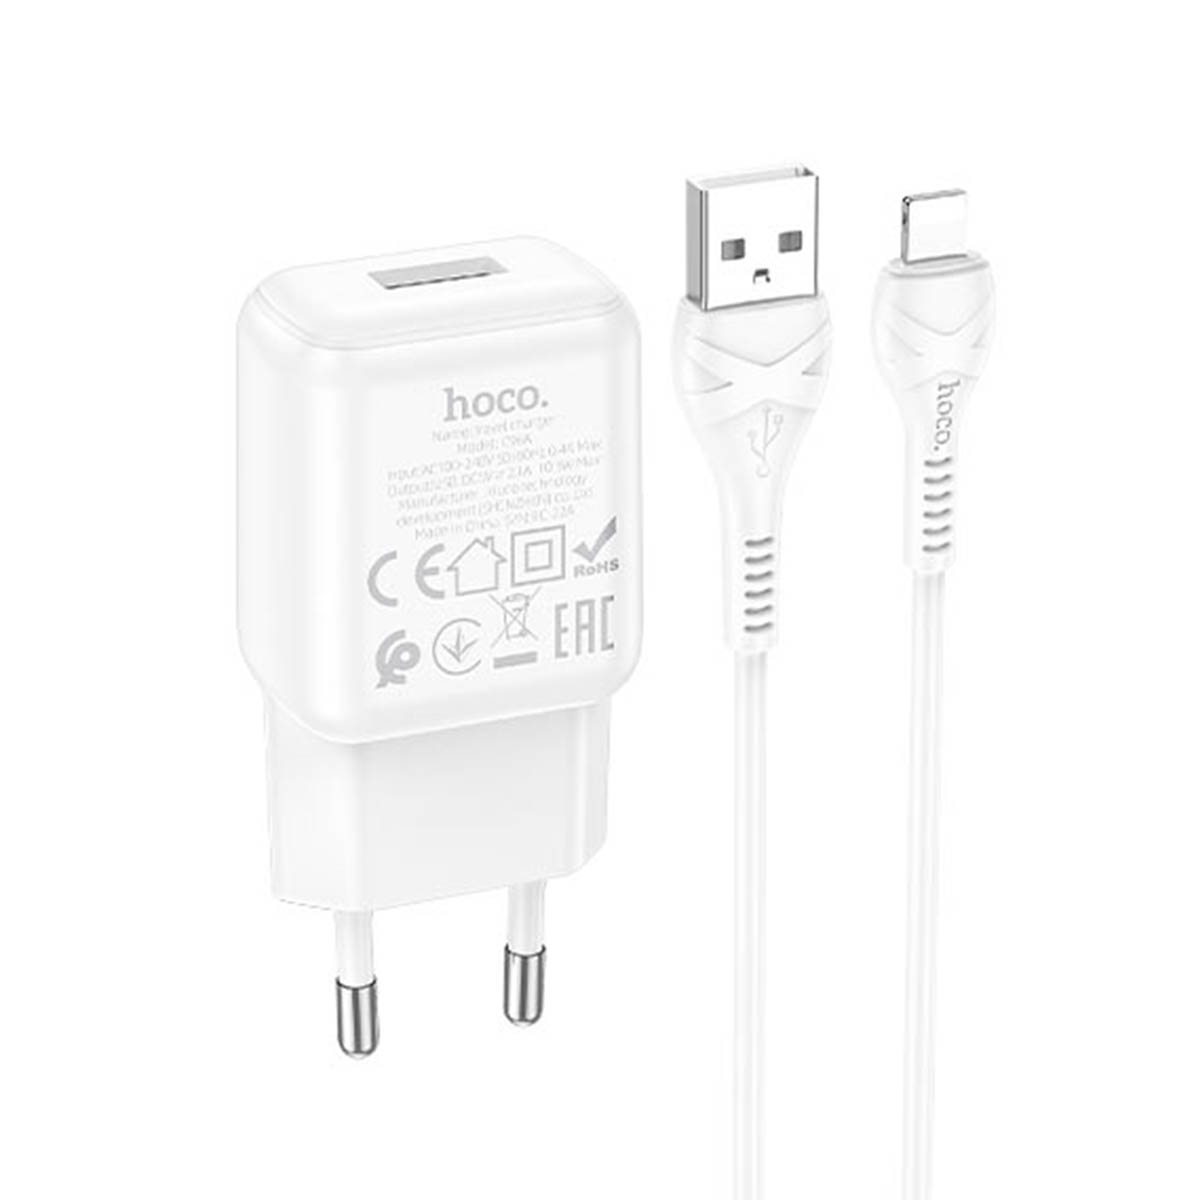 СЗУ (сетевое зарядное устройство) HOCO C96A, адаптер 1 USB 5V-2.1A, кабель Lightning 8 pin, цвет белый